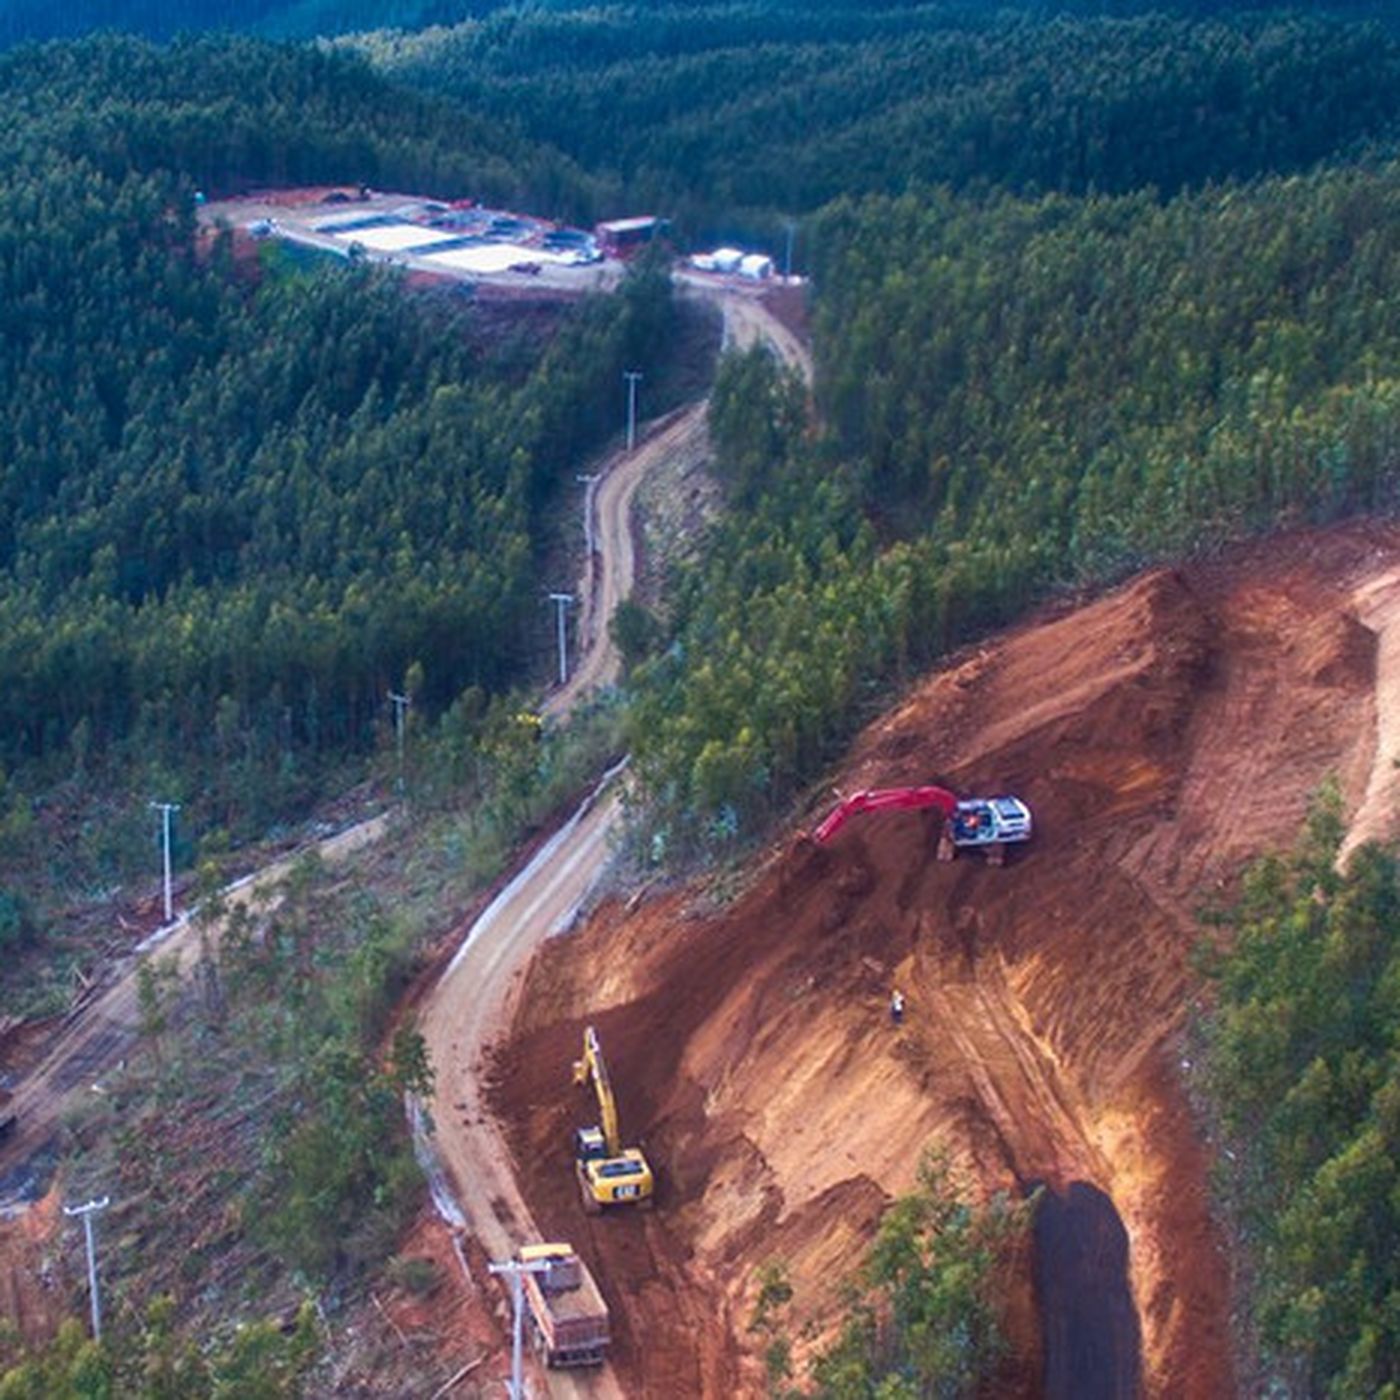 Minera de tierras raras posee derechos de aguas del lugar donde busca instalarse en Penco: Dice no ocuparla en proceso minero